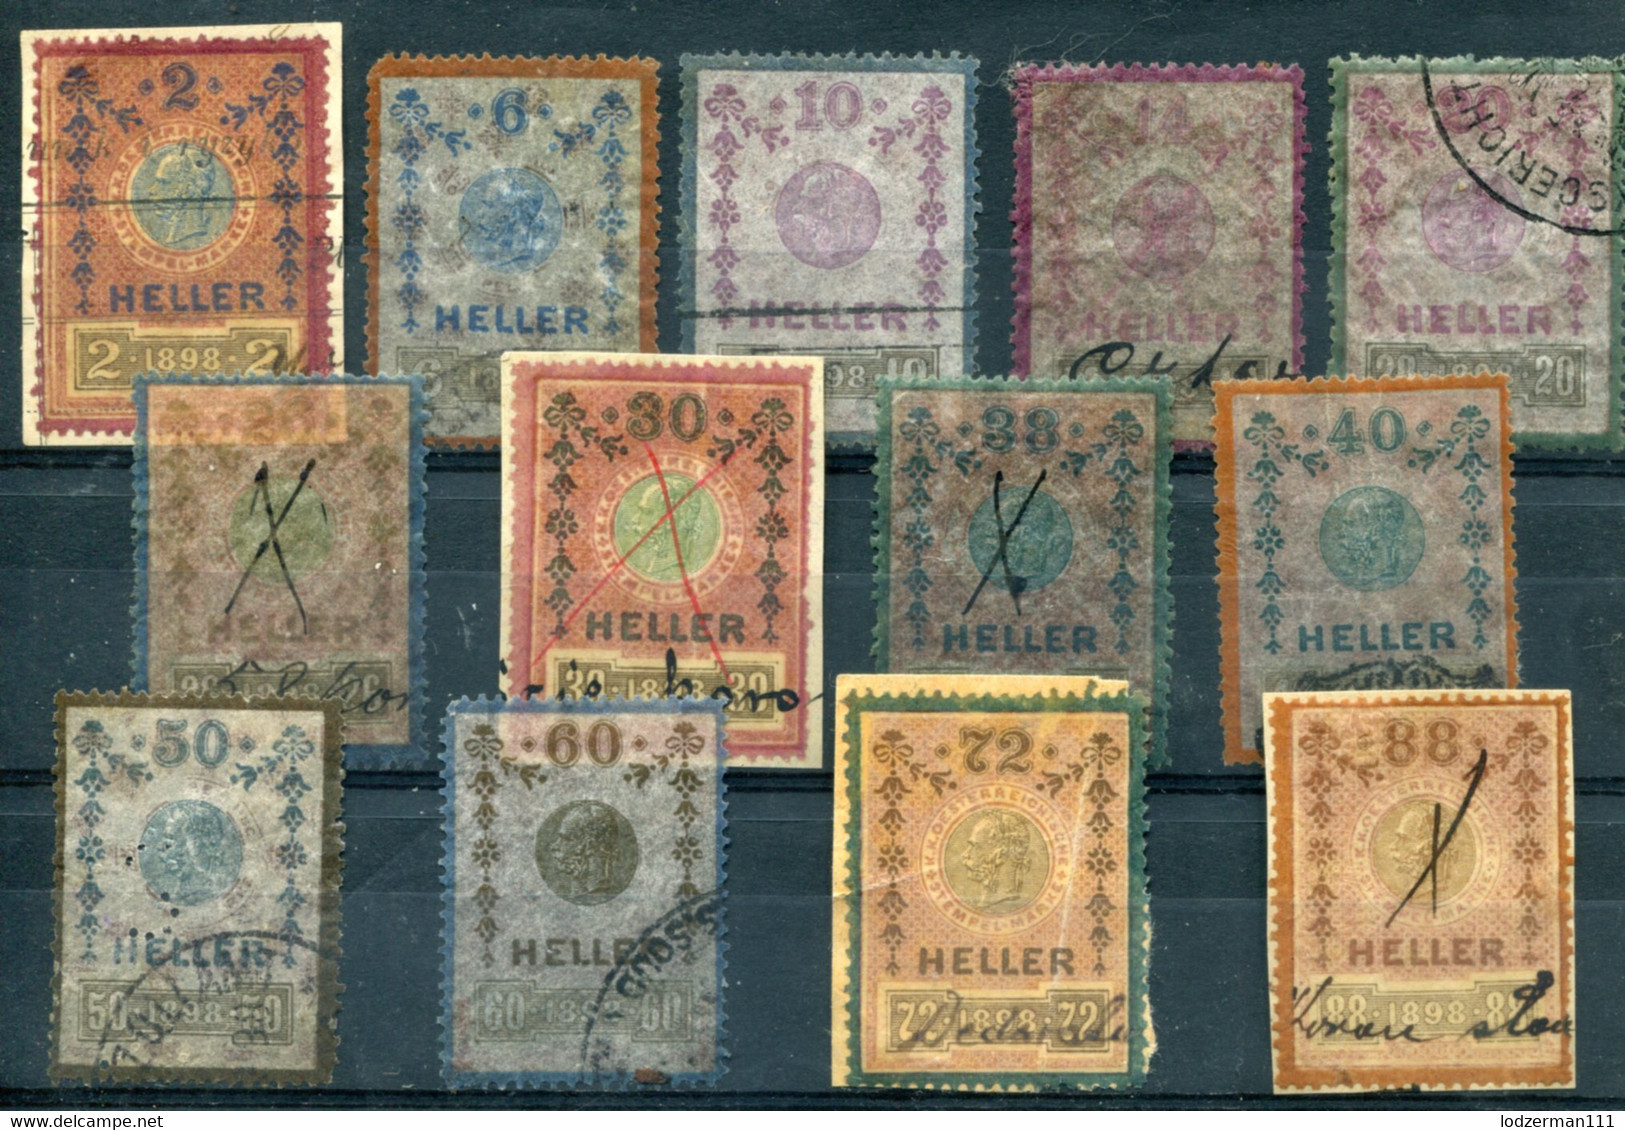 AUSTRIA 1898 - 13 Revenue Stamps 2-88 H - Steuermarken